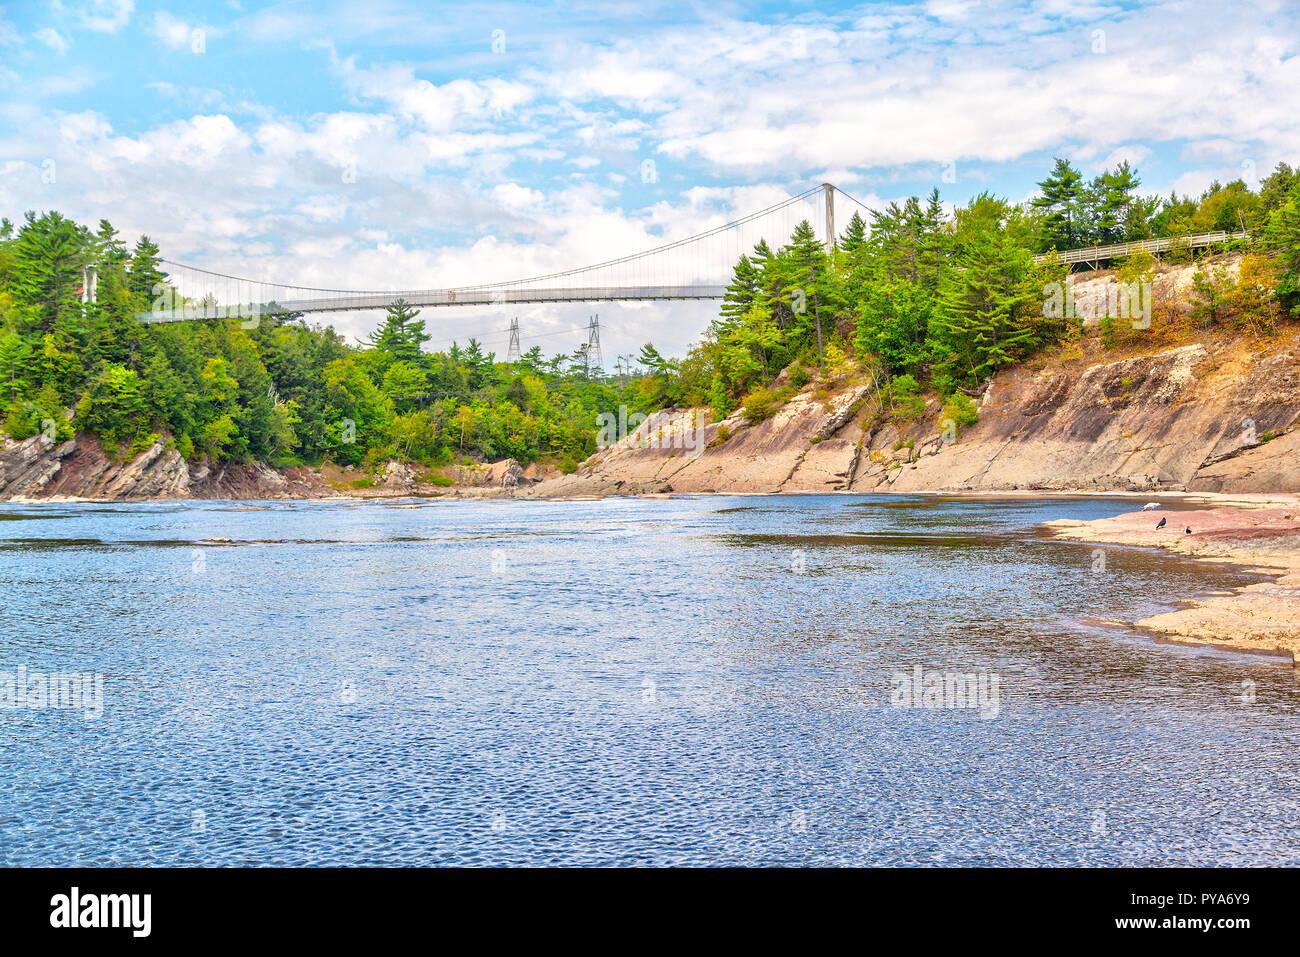 A 113 mètres de long, 23 mètres de la suspension est la passerelle sur la rivière  Chaudière à Chutes-de-la-Chaudière Chaudiere Falls ou à Lévis, Québec.  Archeo Photo Stock - Alamy